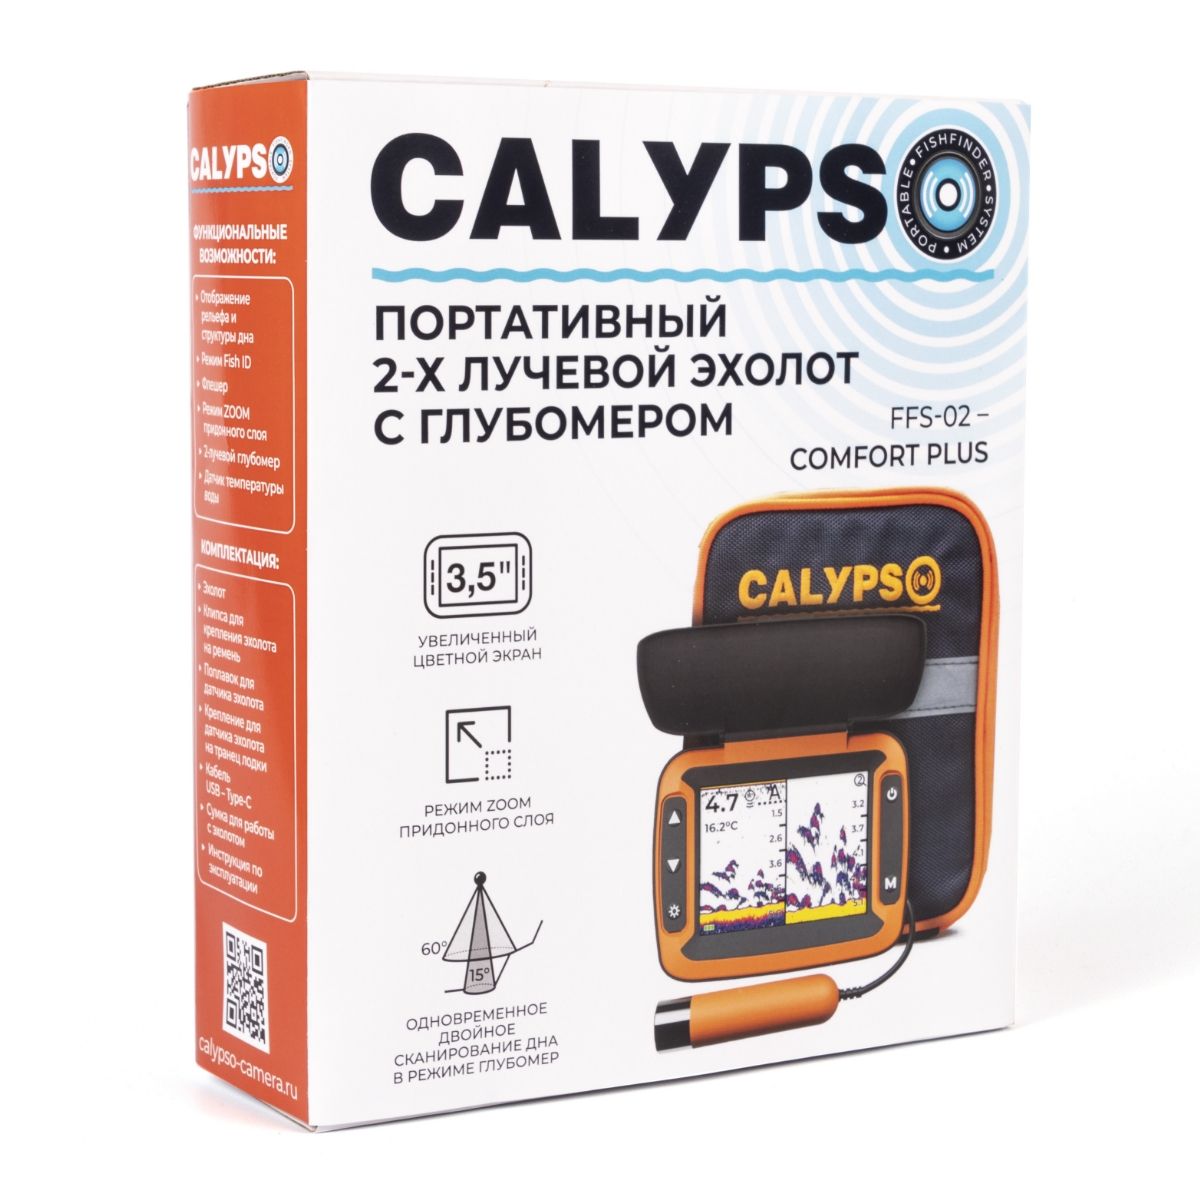 CALYPSO FFS-02 COMFORT PLUS